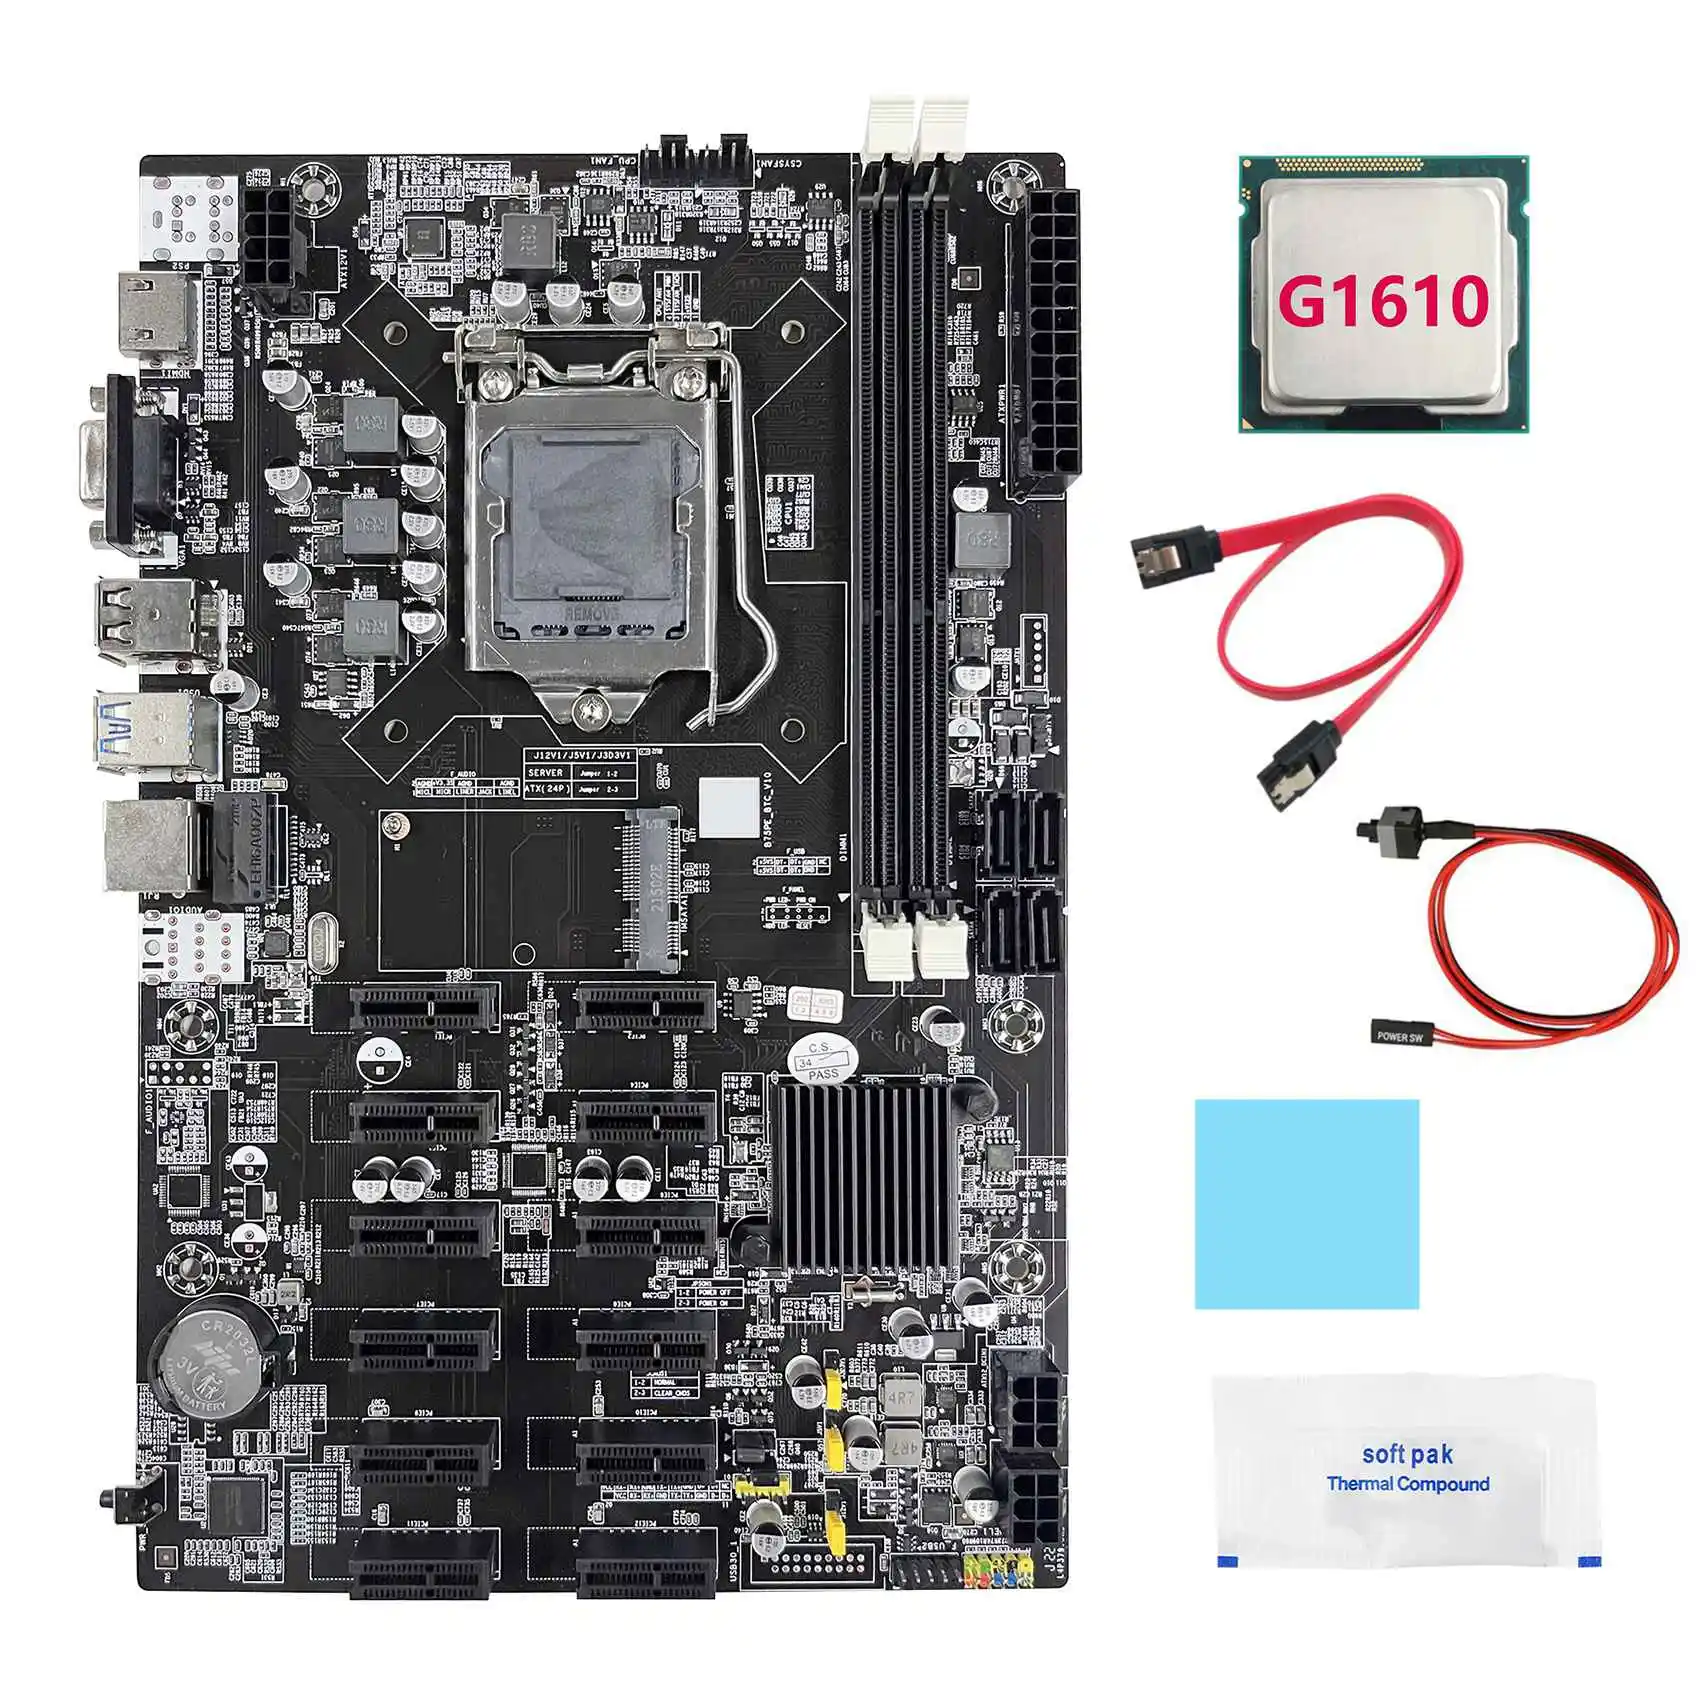 

Материнская плата B75 12 PCIE BTC для майнинга + процессор G1610 + кабель SATA + кабель переключателя + термопаста + термопрокладка ETH материнская плата д...